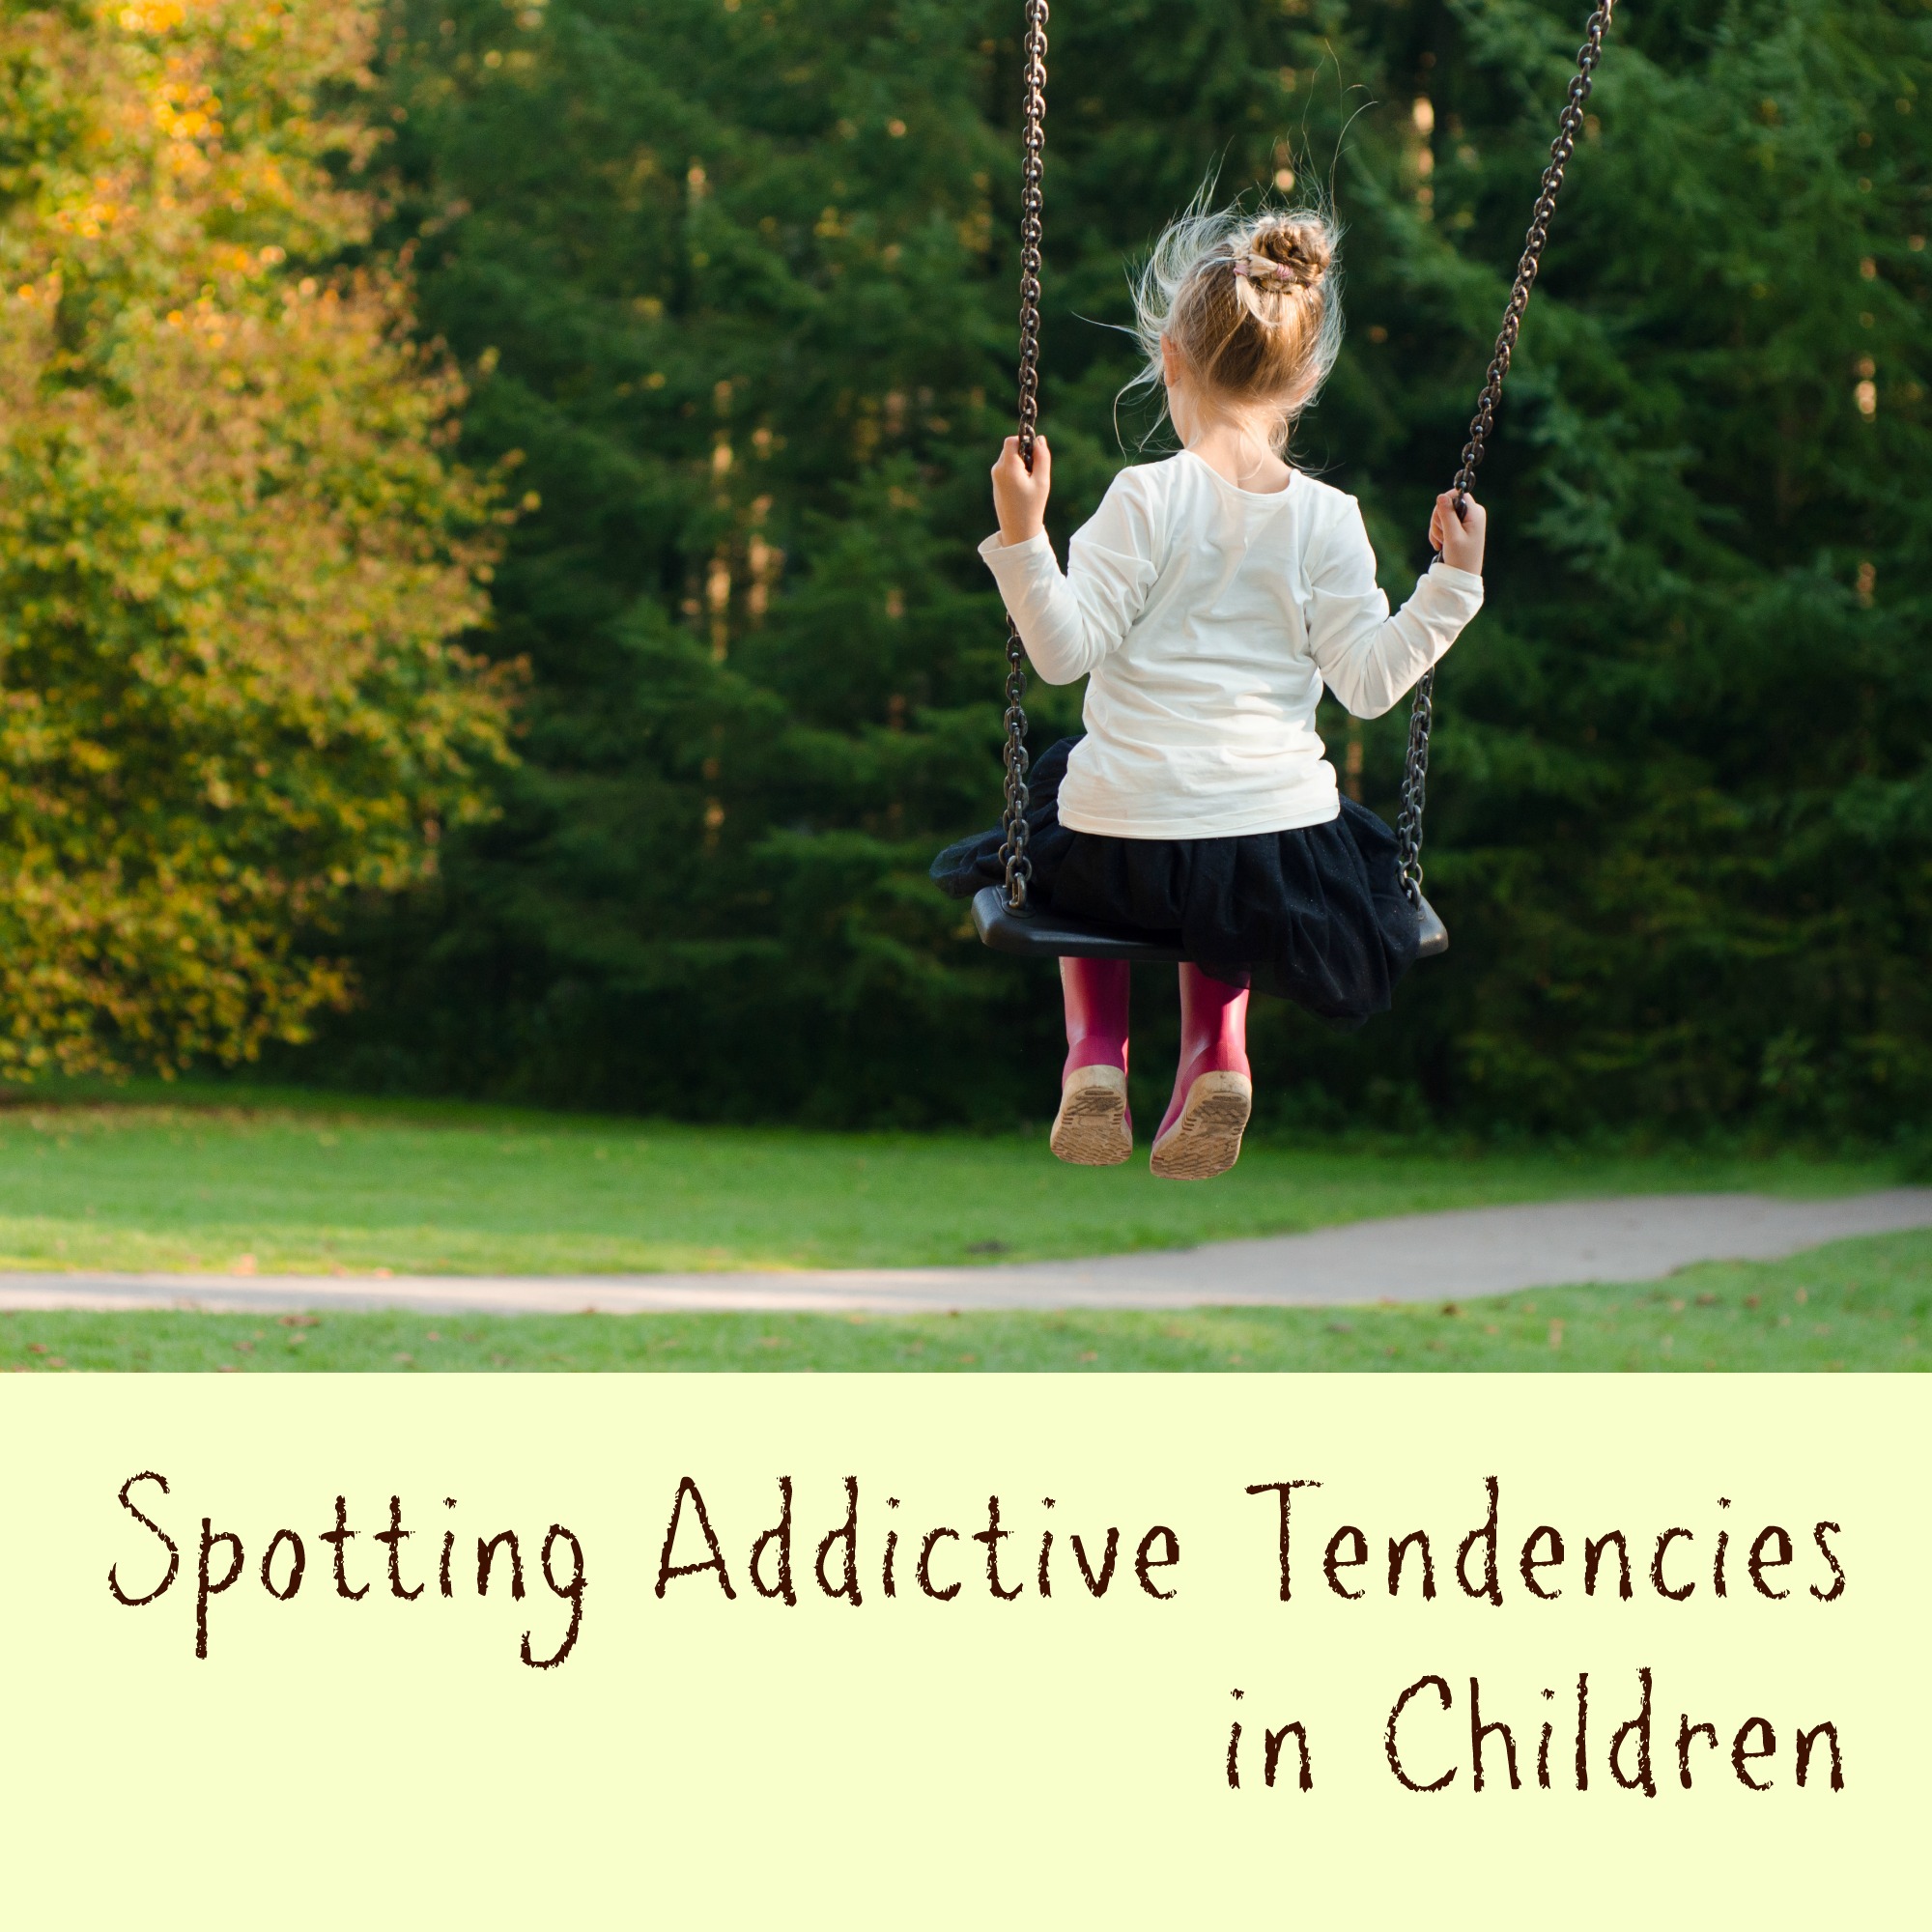 Spotting Addictive Tendencies in Children